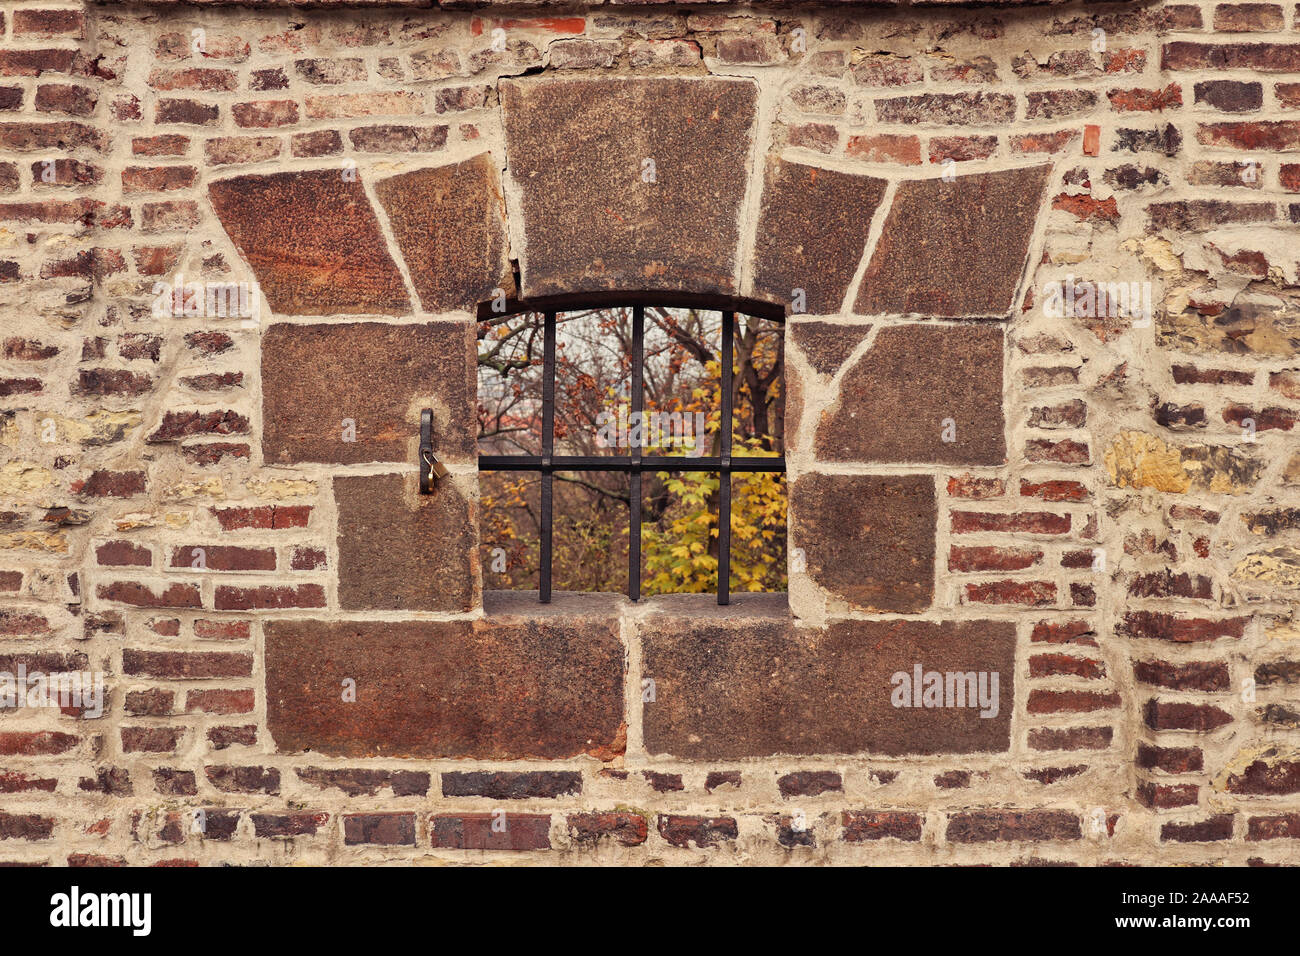 Dettaglio di apertura / scappatoia in montagna con ferro forgiato reticolo incorniciato con blocchi di pietra in un vecchio mattone / muratura mura di fortificazione del Castello di Vyšehrad, Praga Foto Stock